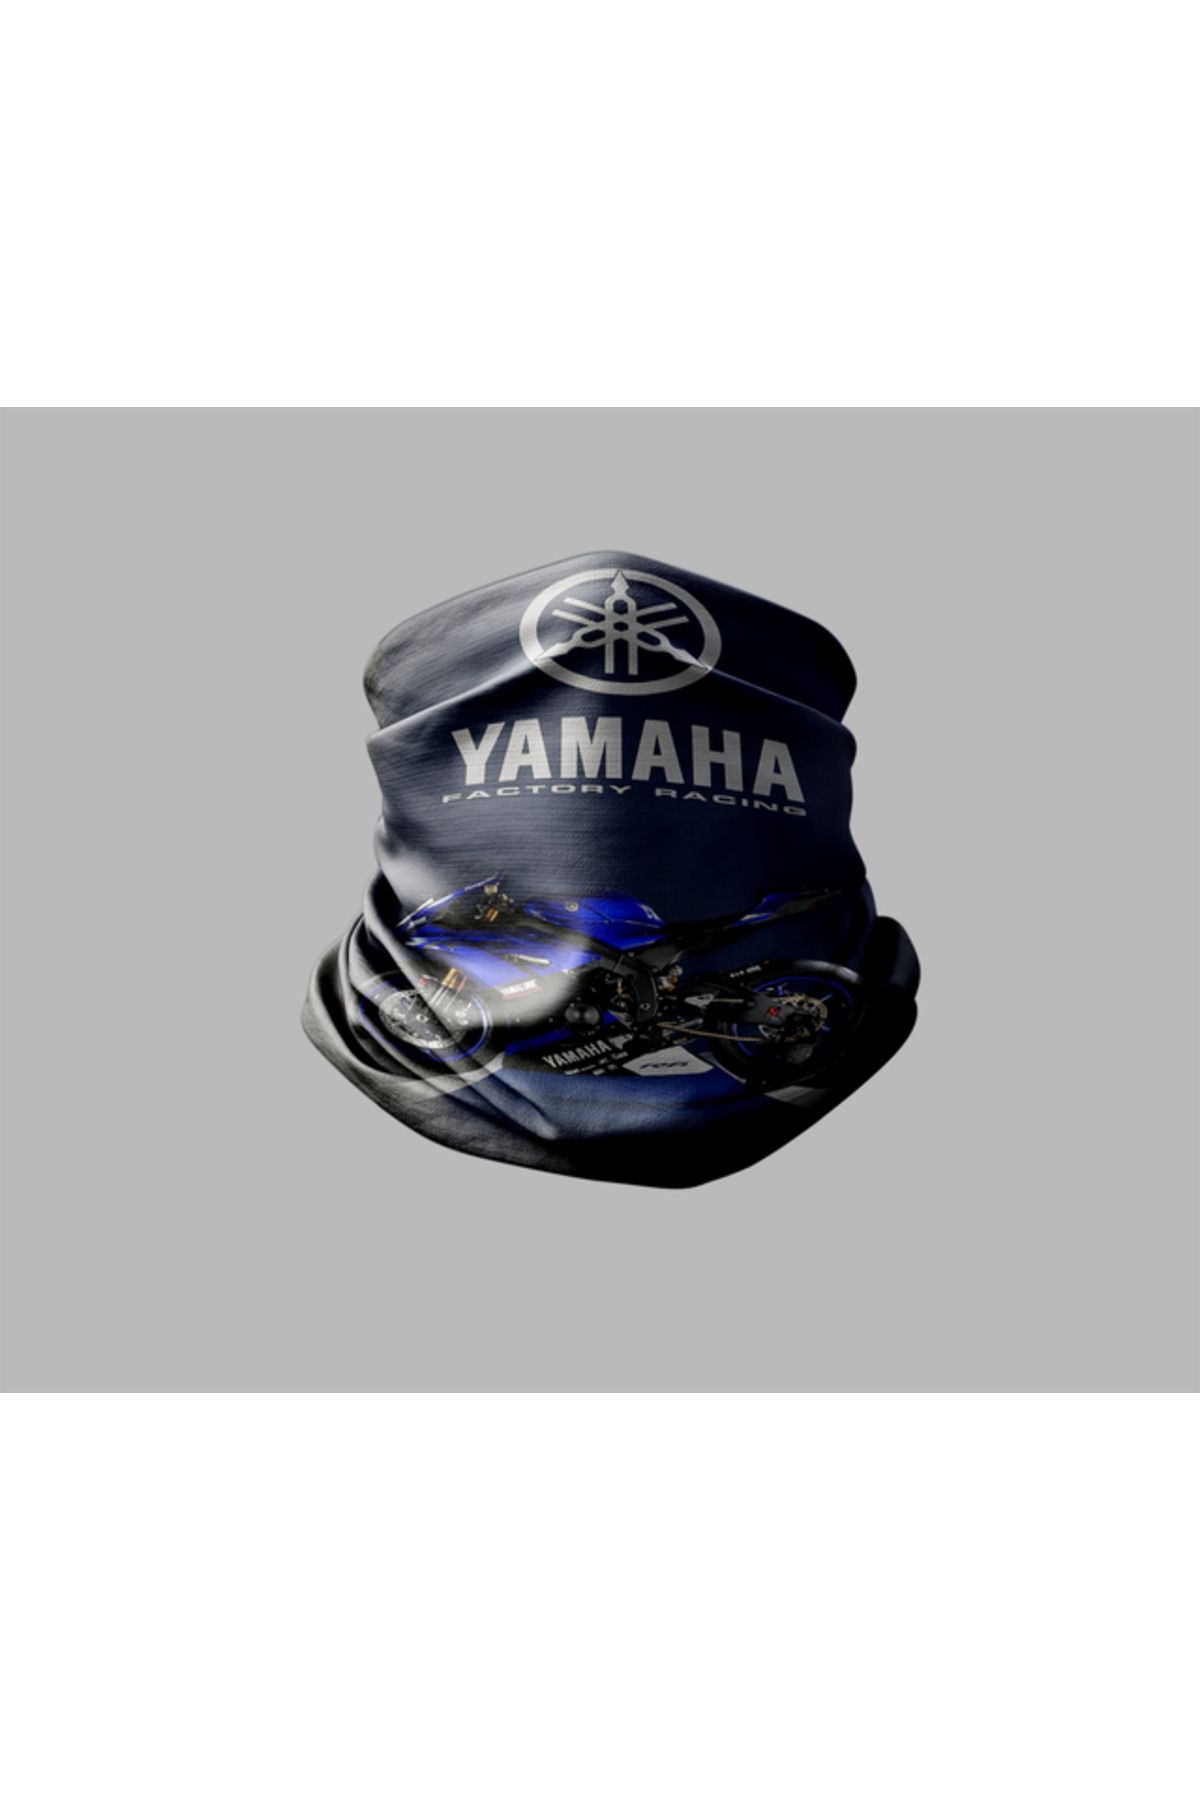 Buffalo Yamaha Tasarımlı Motorcu Buff Maske Outdoor Boyunluk Unisex Bandana